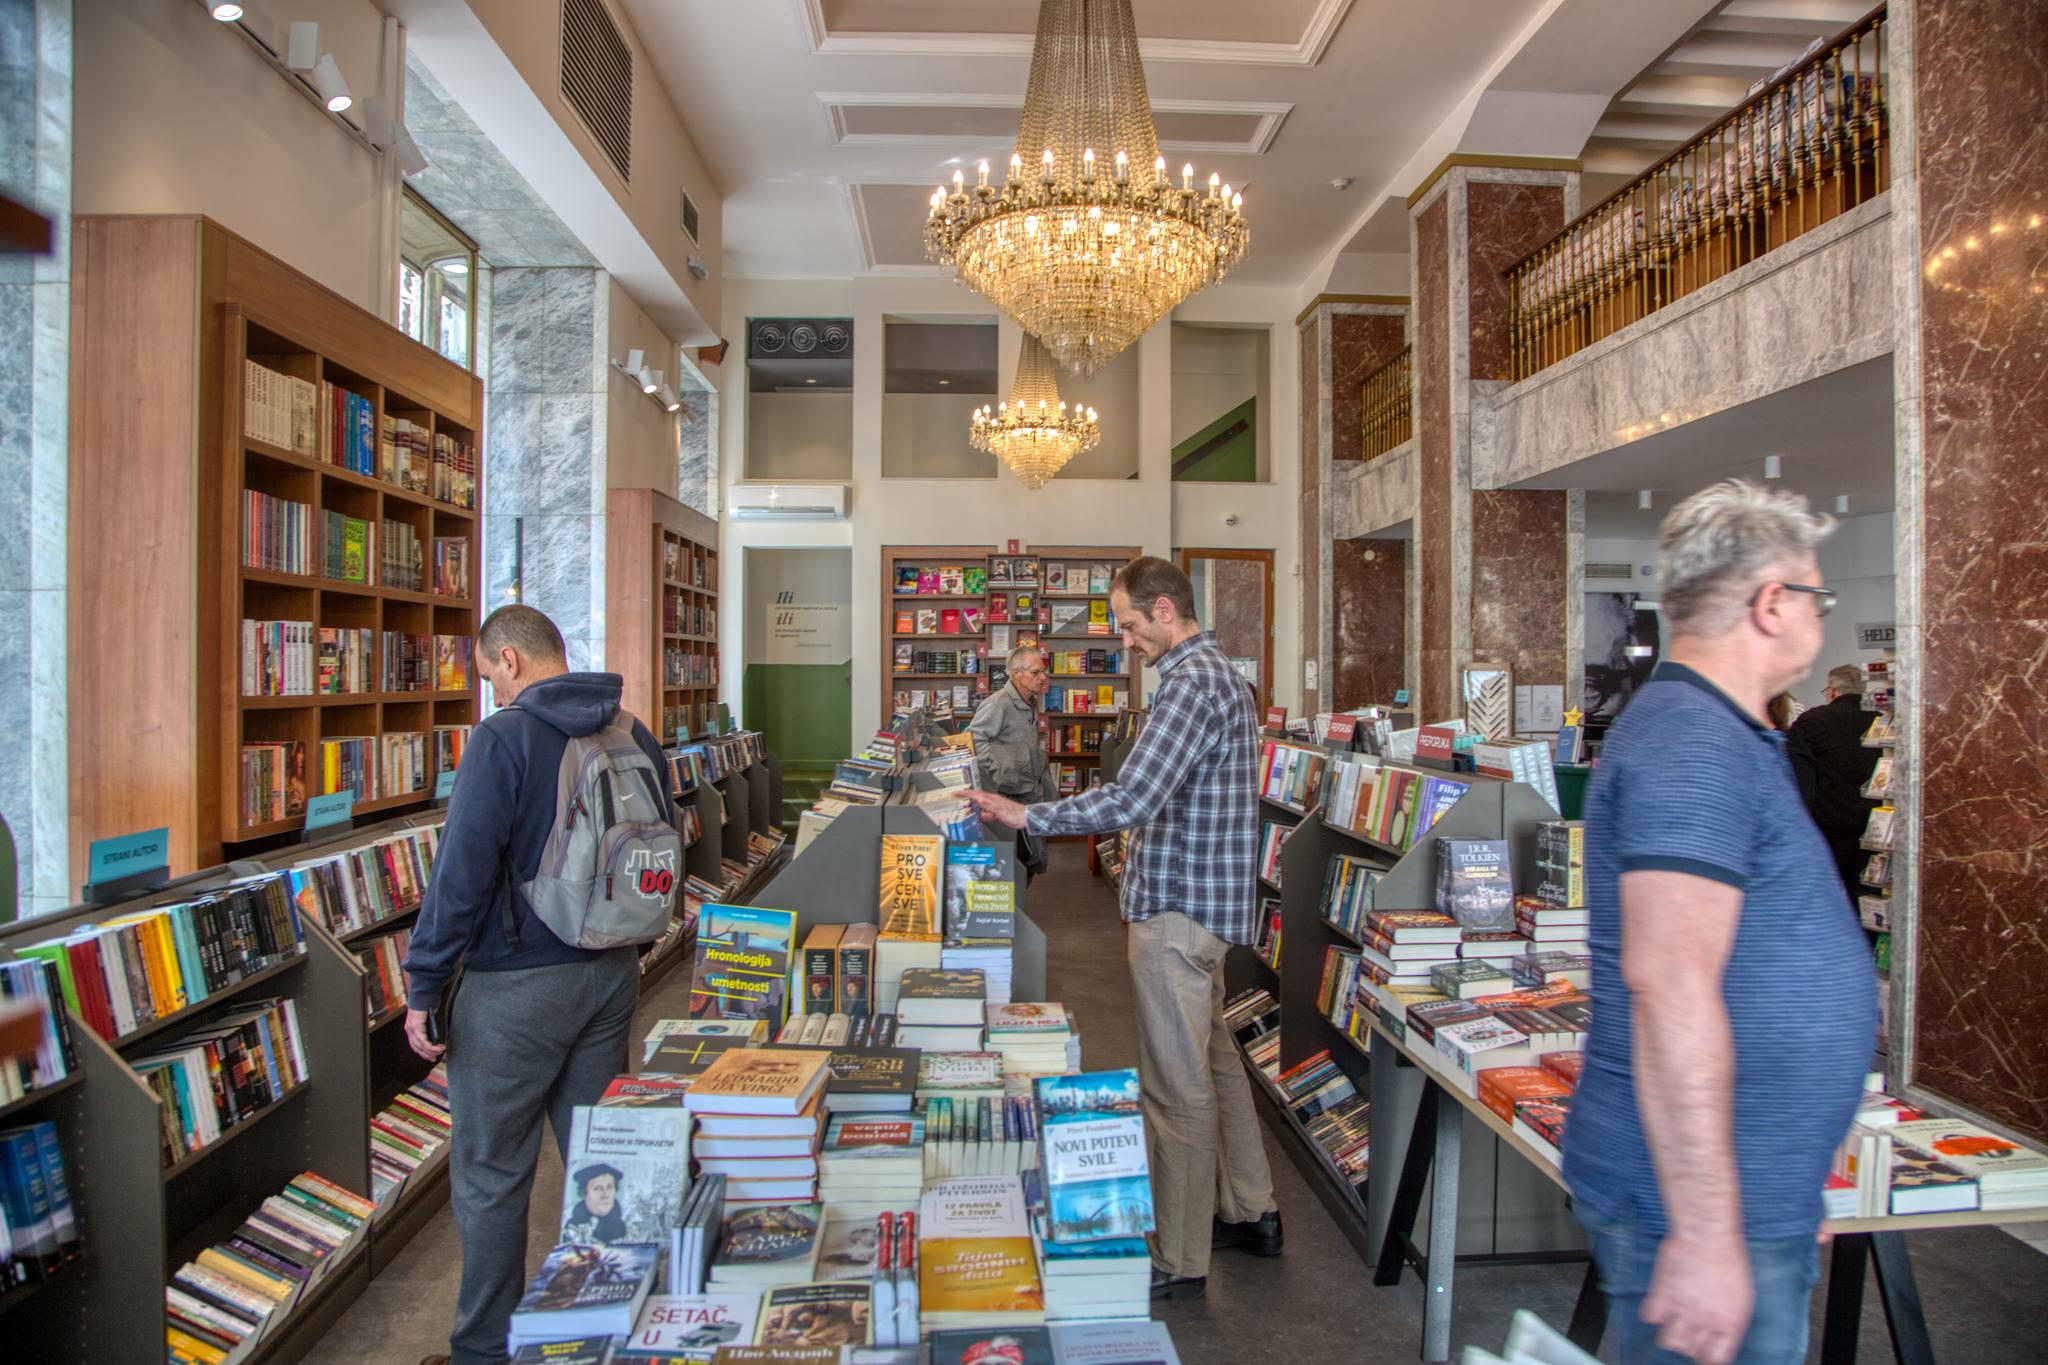 De fleste bøkene i Beograds bokhandlere er på serbisk, men det er likevel verdt å stikke innom flere av dem for å se på de flotte omgivelsene.